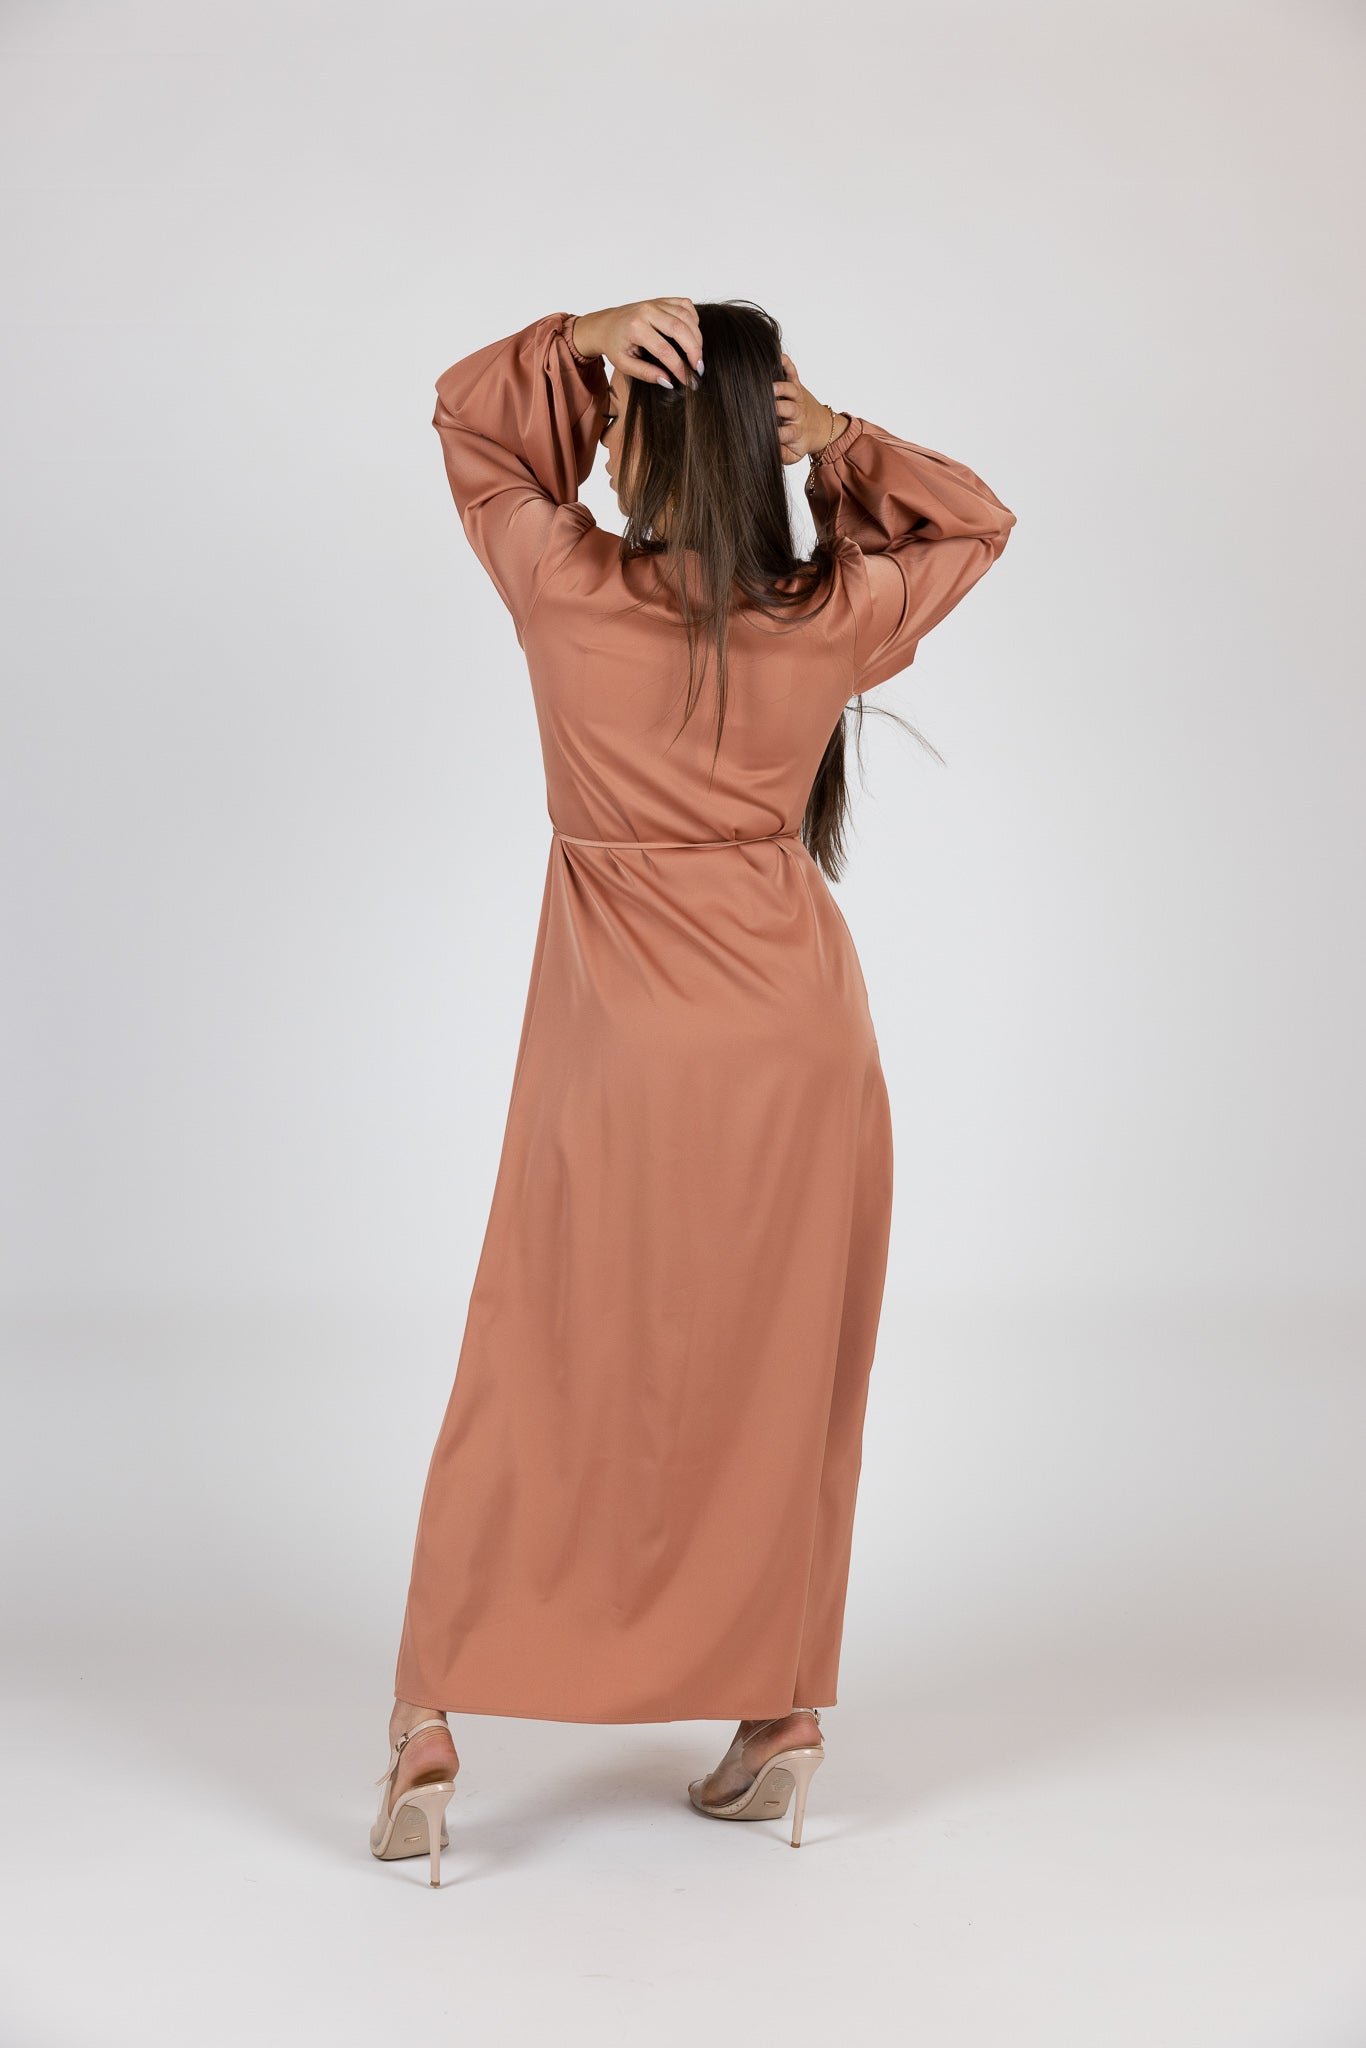 M7745ASalmon-dress-abaya